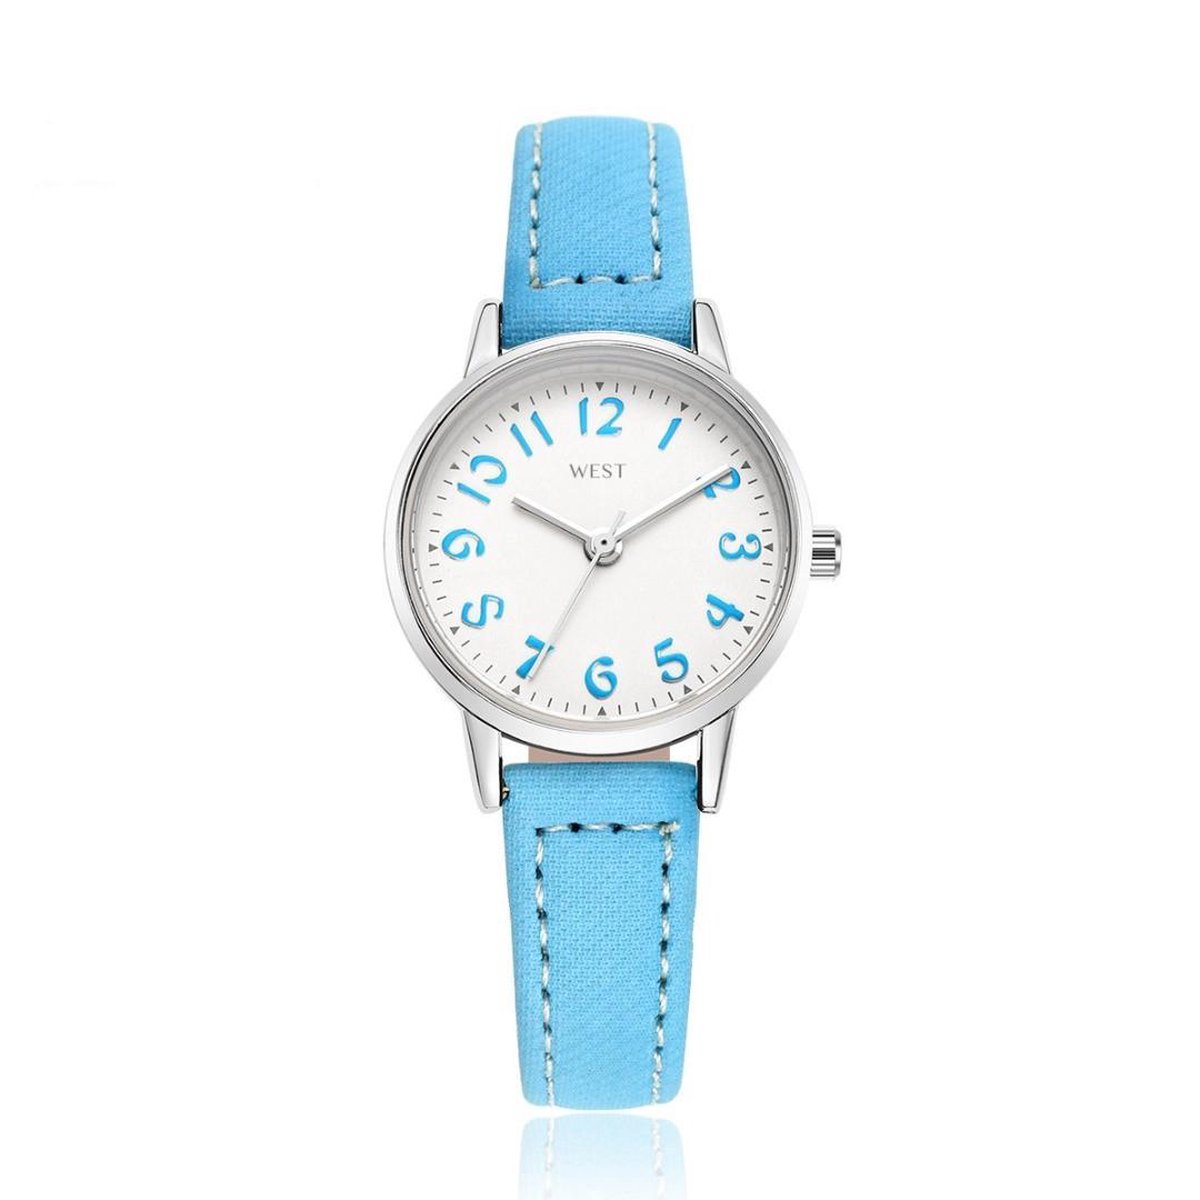 West Watch - model Rose - analoog kinder- tiener horloge - Ø 23 mm - lichtblauw-zilverkleurig